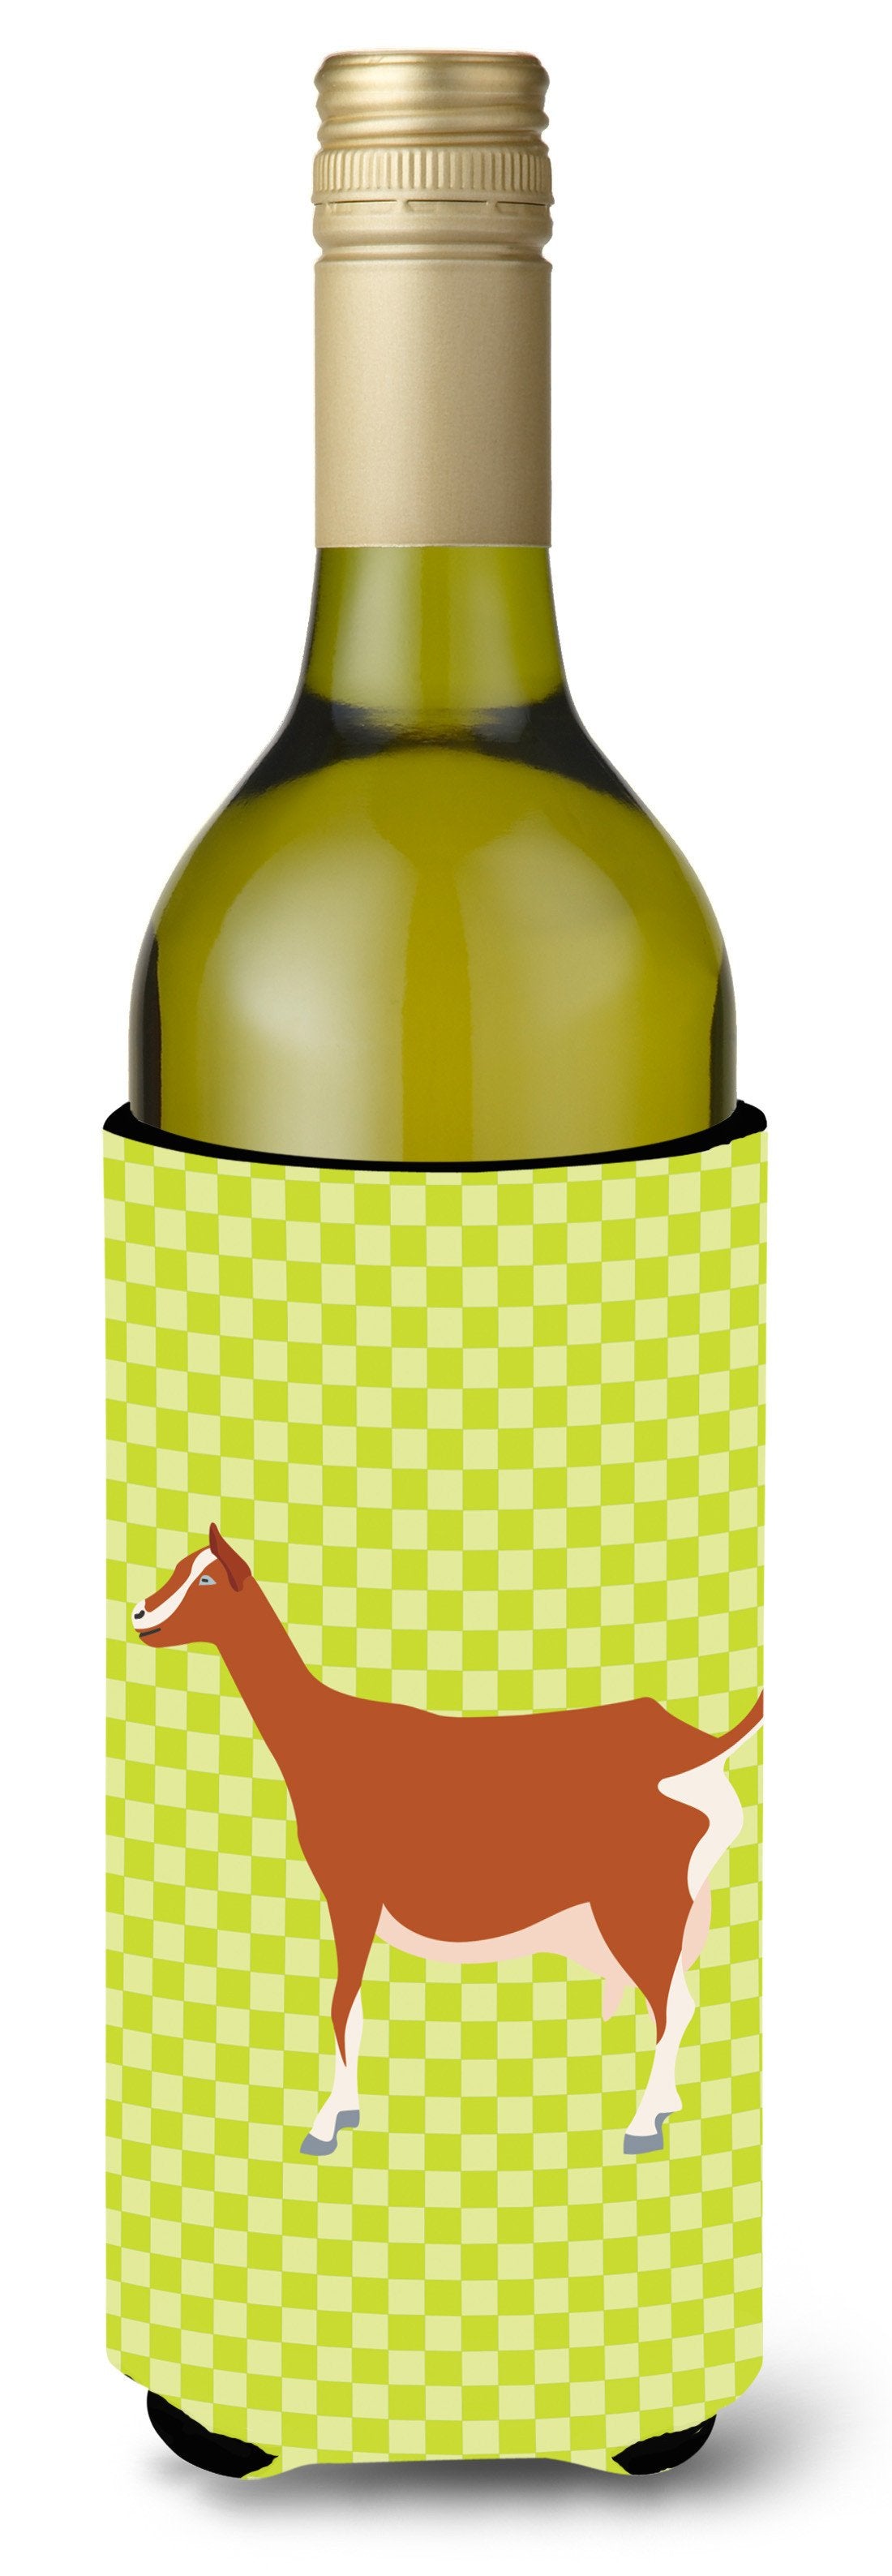 Toggenburger Goat Green Wine Bottle Beverge Insulator Hugger BB7707LITERK by Caroline's Treasures